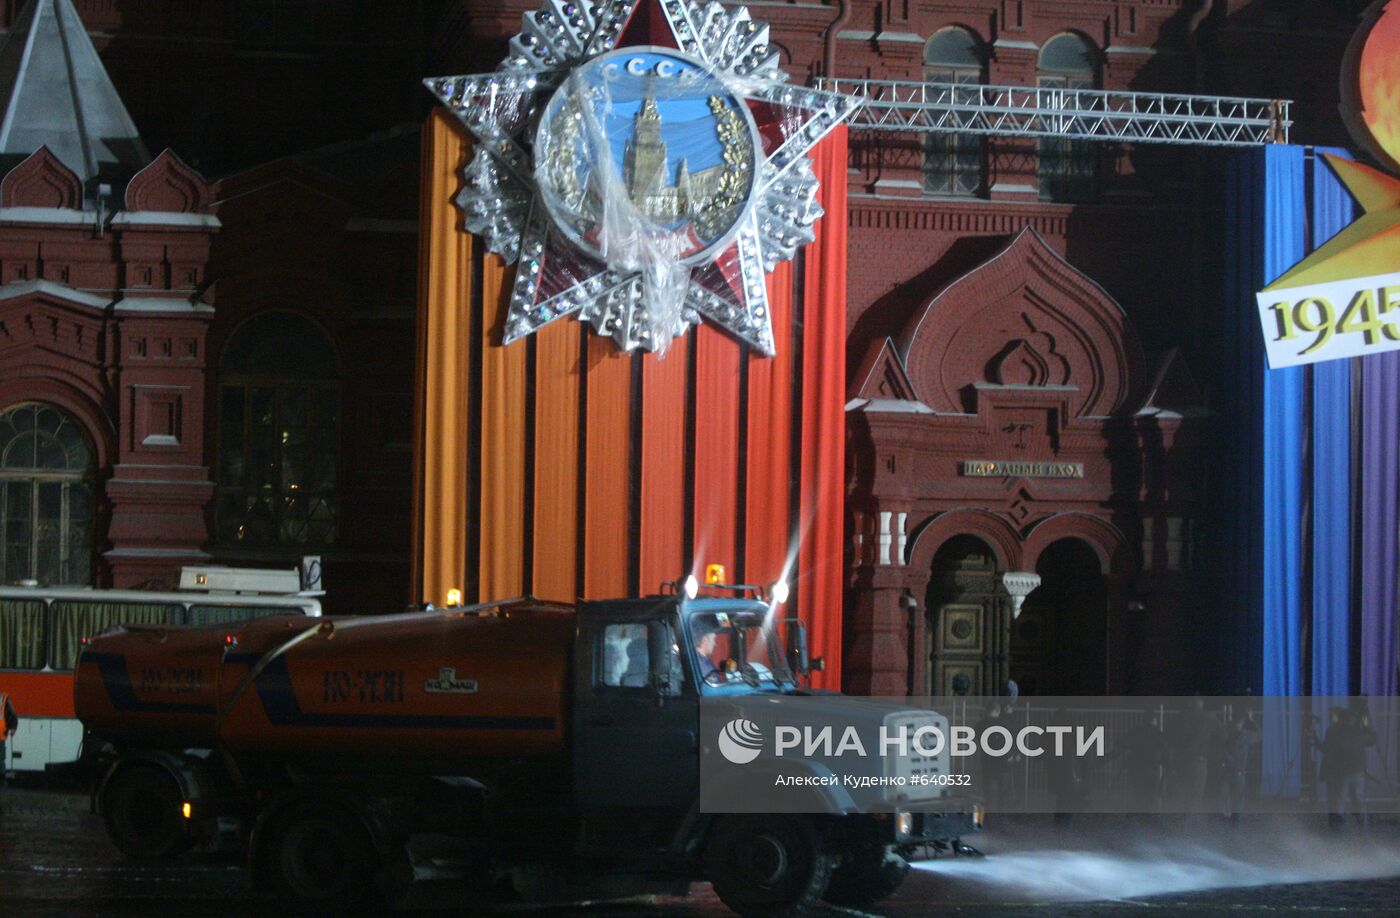 Мойка Красной площади после репетиции Парада Победы